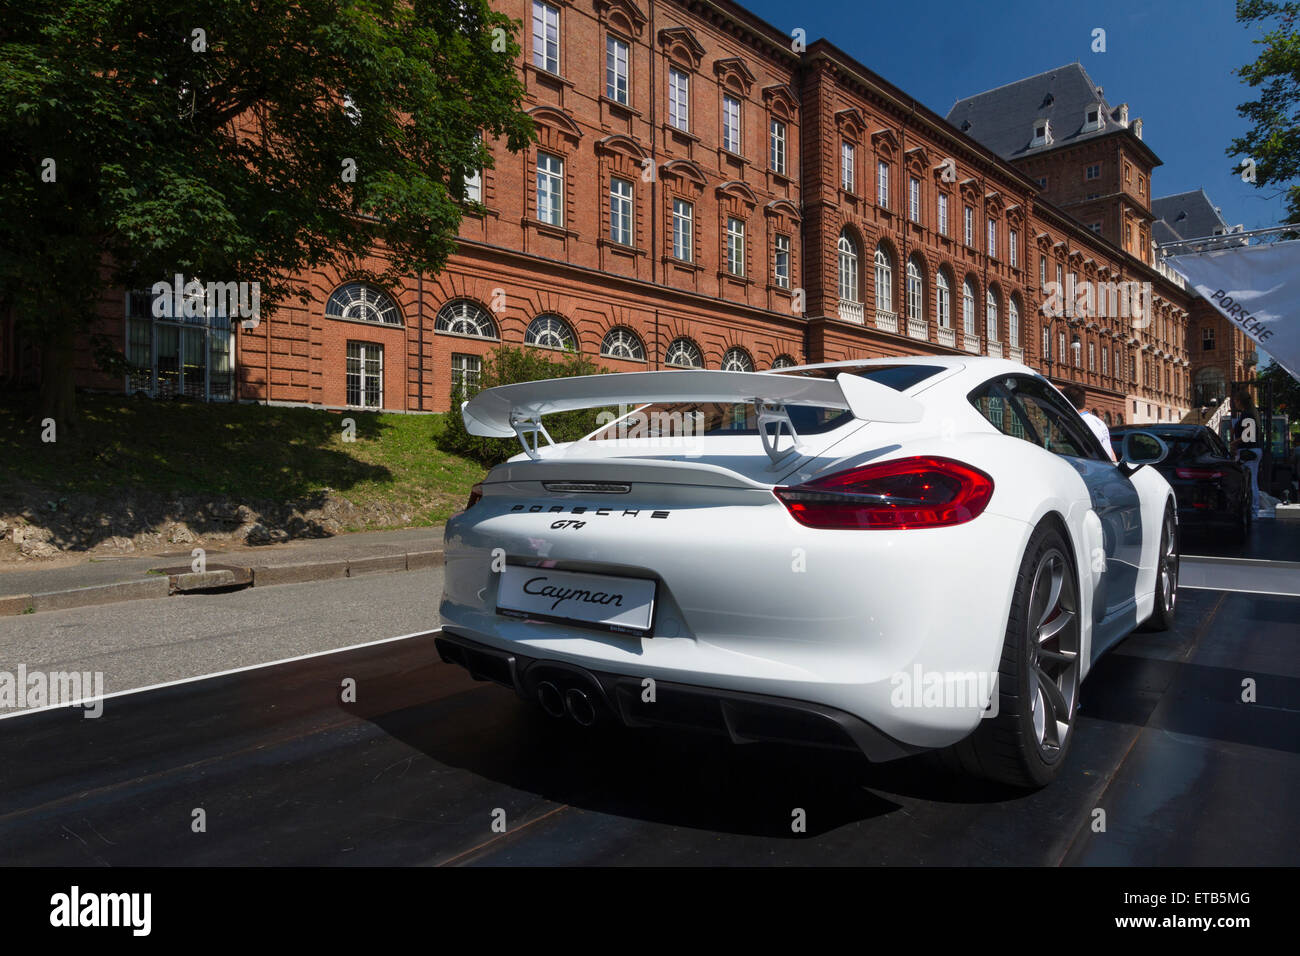 Turin, Italie, 11 juin 2015. Vue arrière de Porsche Cayman GT4. Parco Valentino car show a accueilli 93 voitures par de nombreux fabricants d'automobiles et les concepteurs de voiture à l'intérieur du parc Valentino, Turin, Italie. Banque D'Images